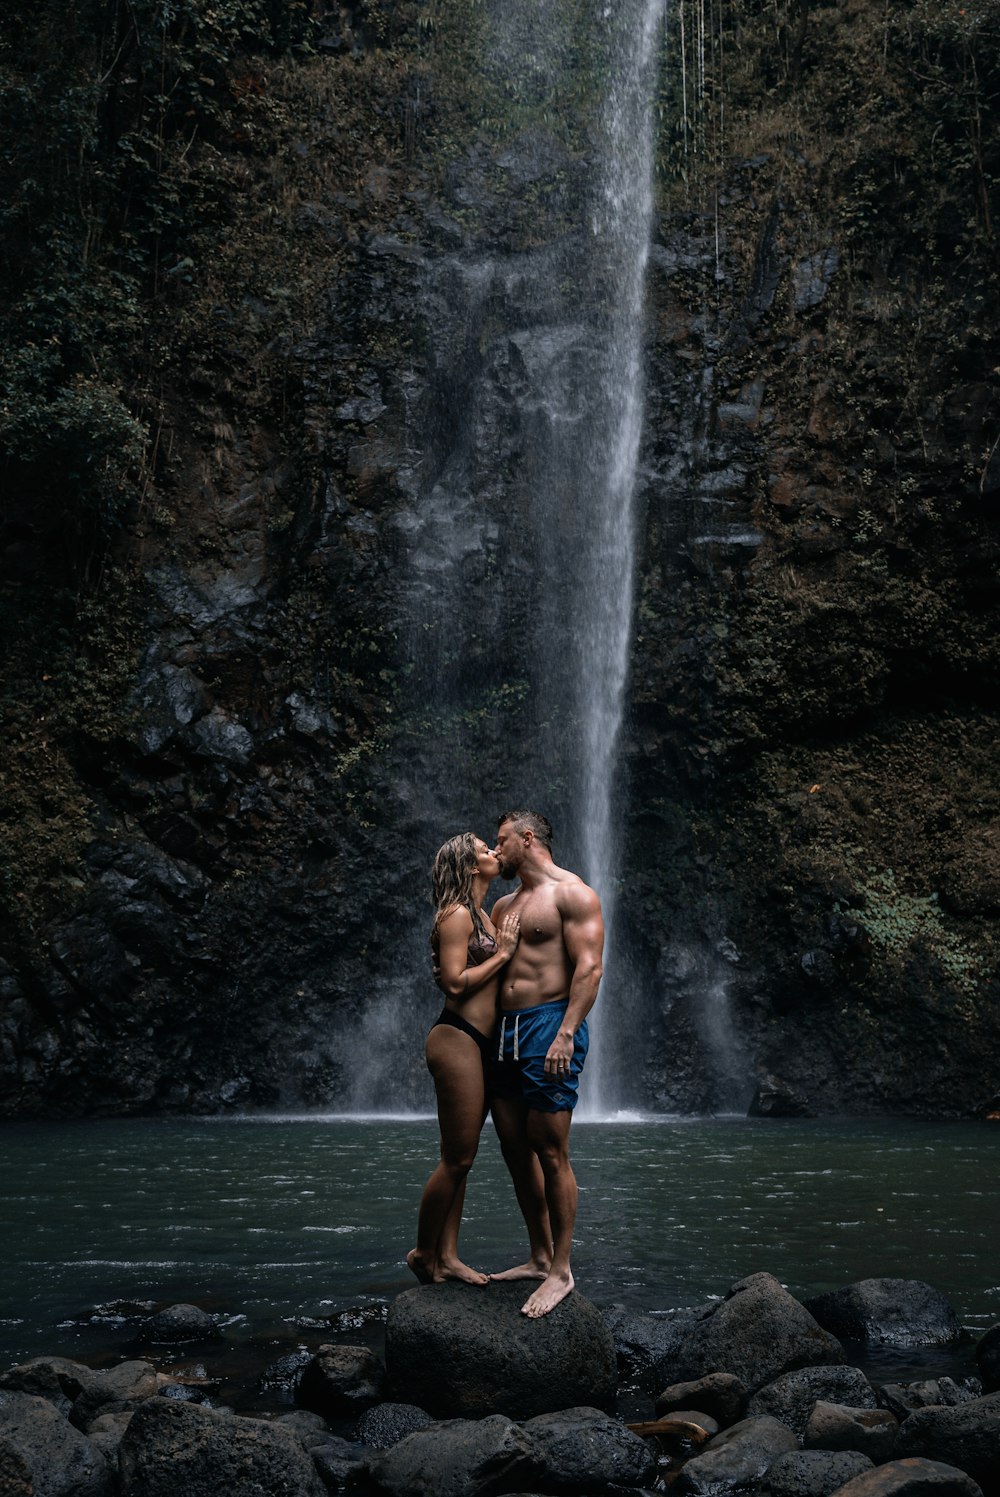 Un uomo e una donna in piedi davanti a una cascata